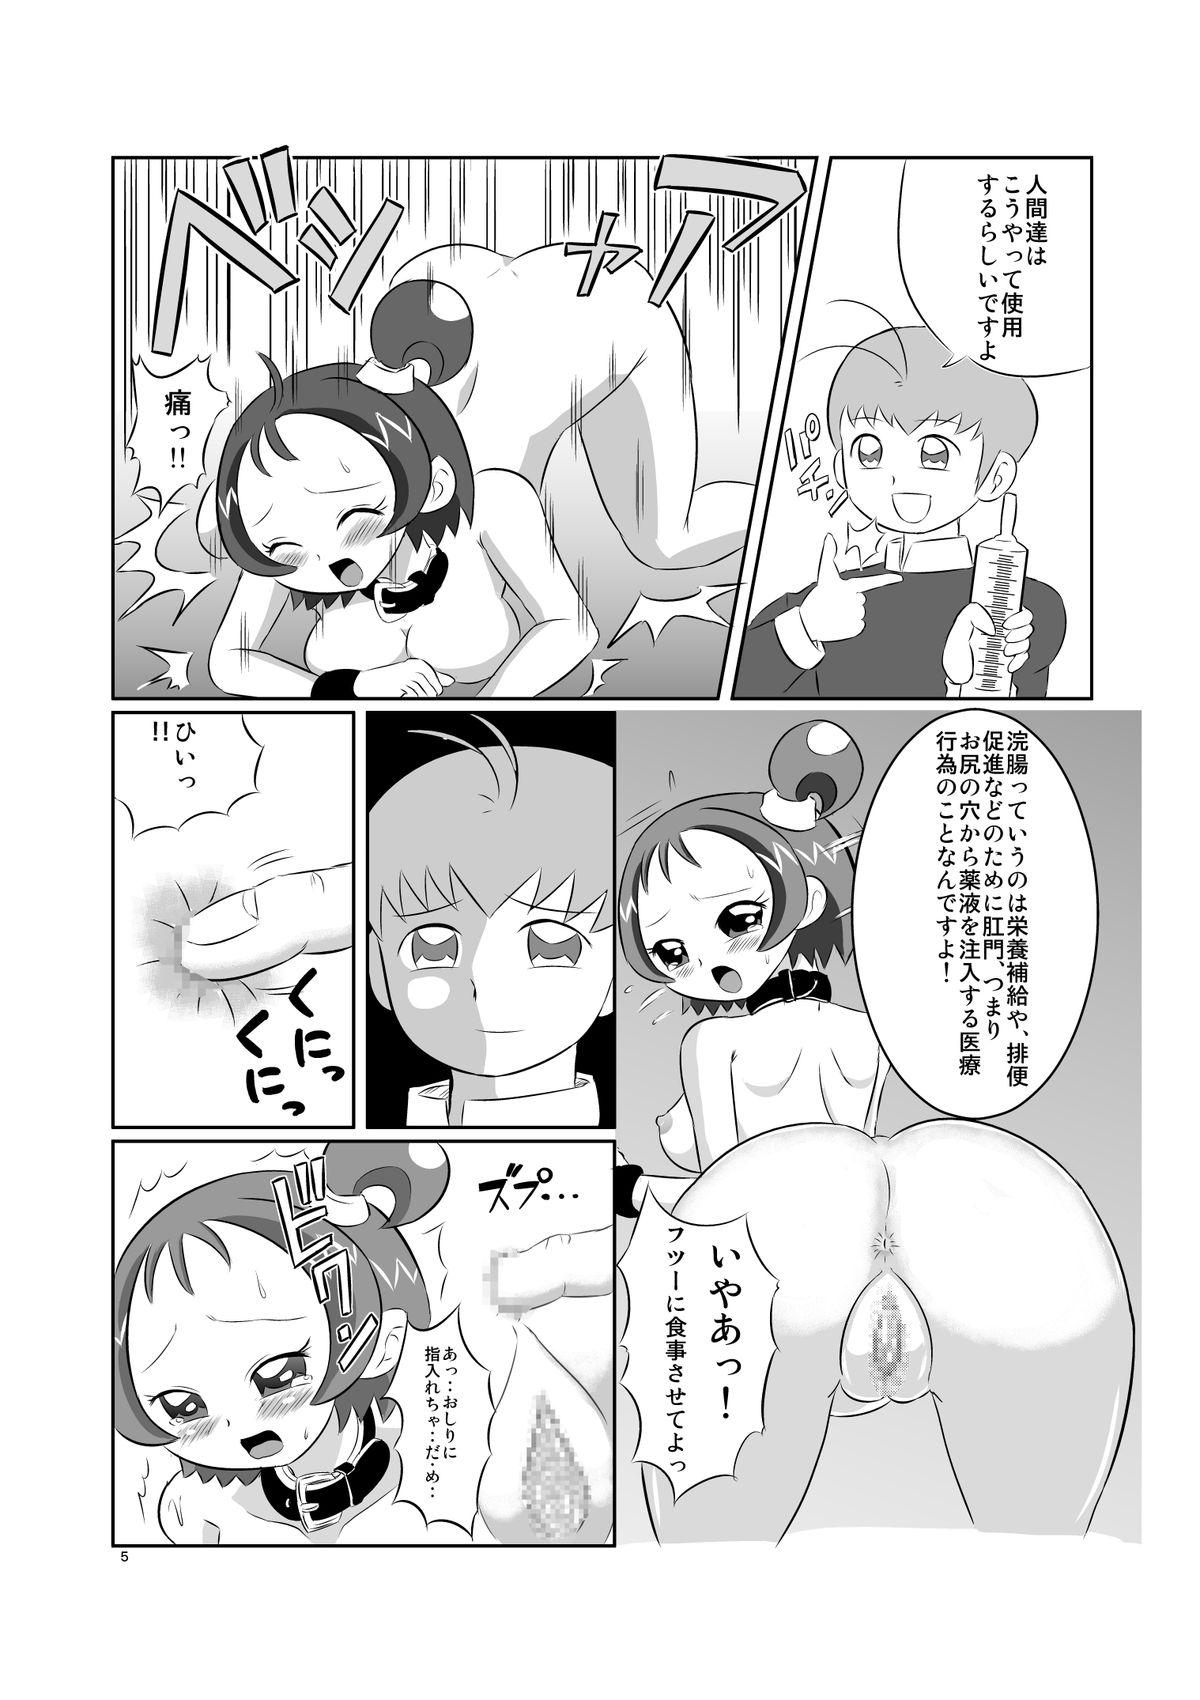 Ffm DEEP PURPLE 肛虐調教編 - Ojamajo doremi Student - Page 7